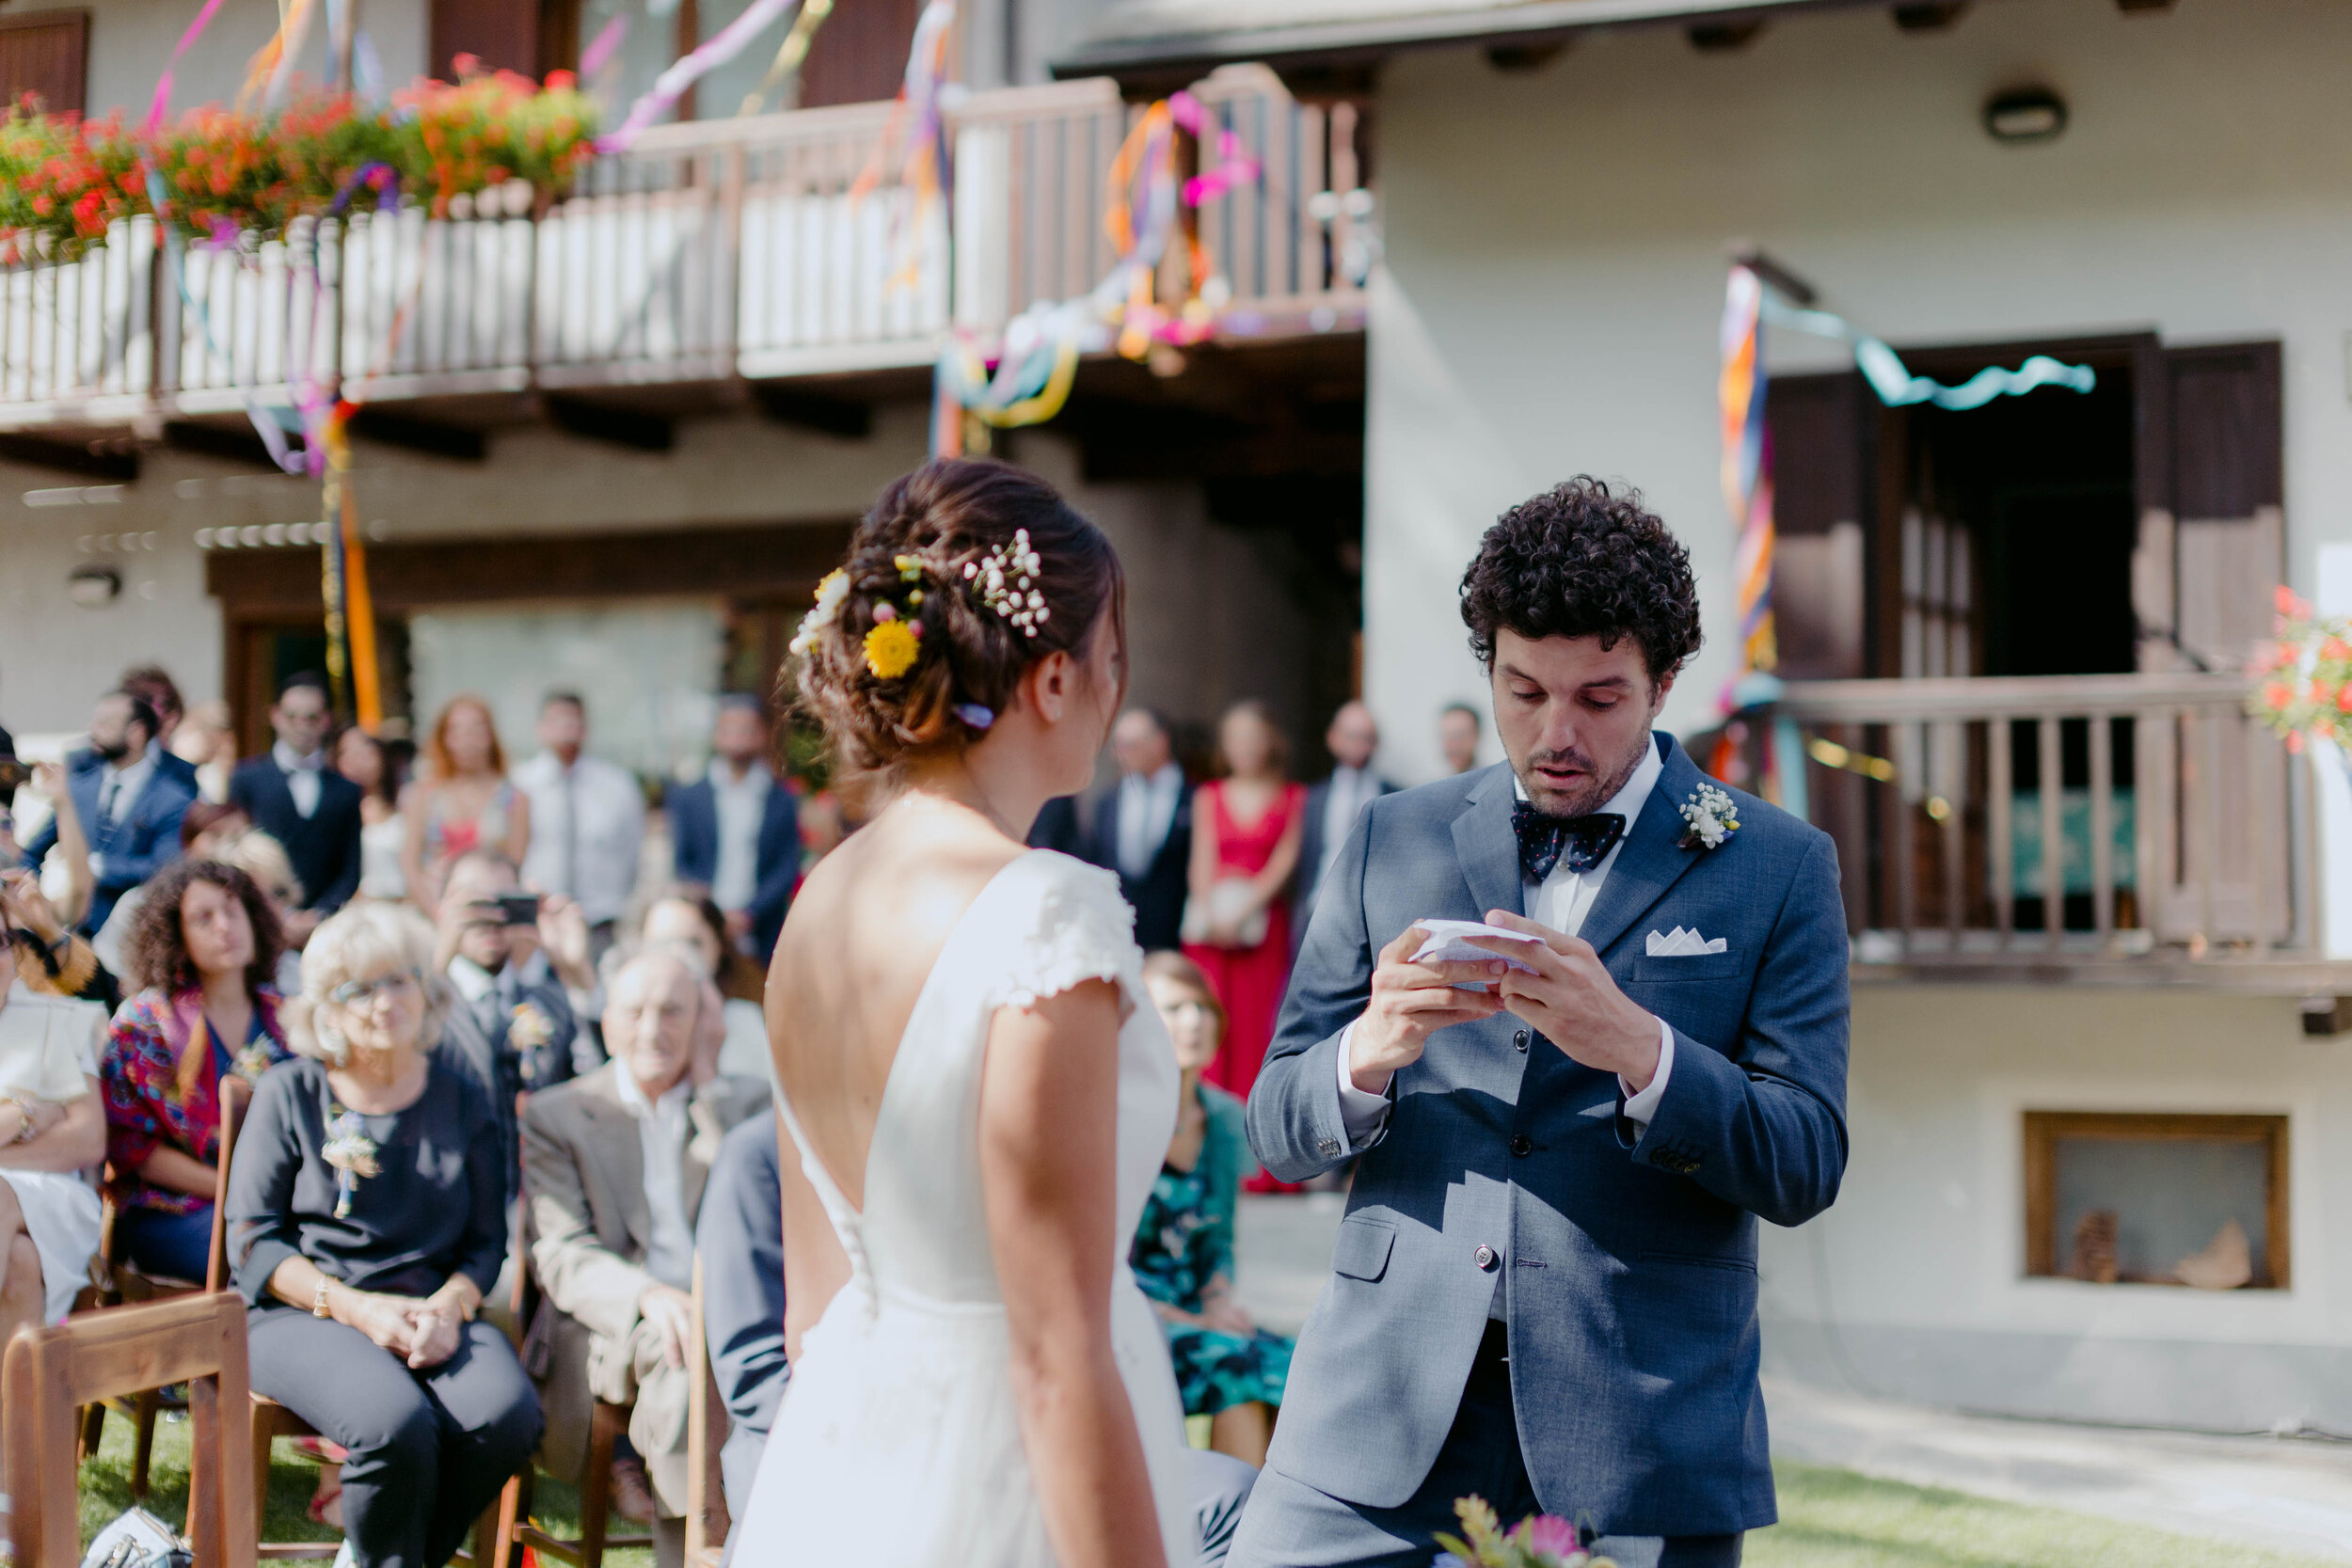 037 - Matrimonio in Val di Susa - Miriam Callegari Fotografa.JPG